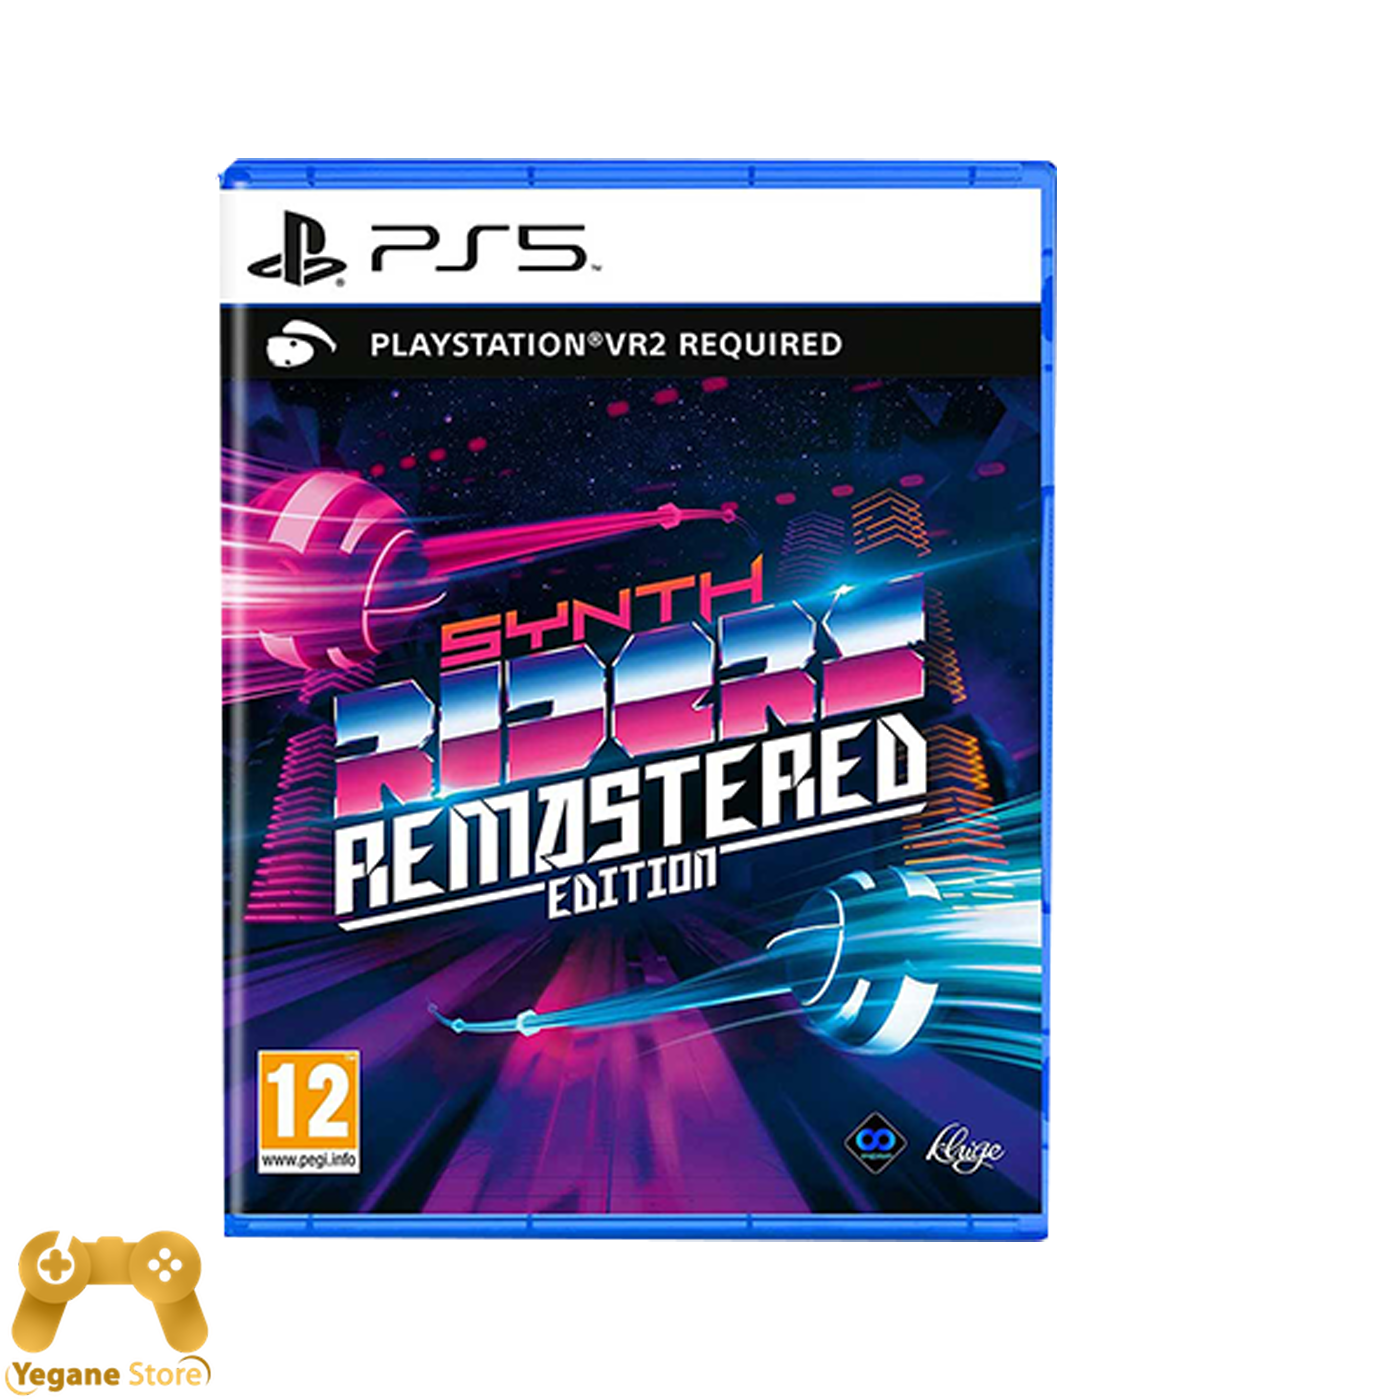 قیمت و خرید بازی Synth Riders Remastered Edition مخصوص VR2